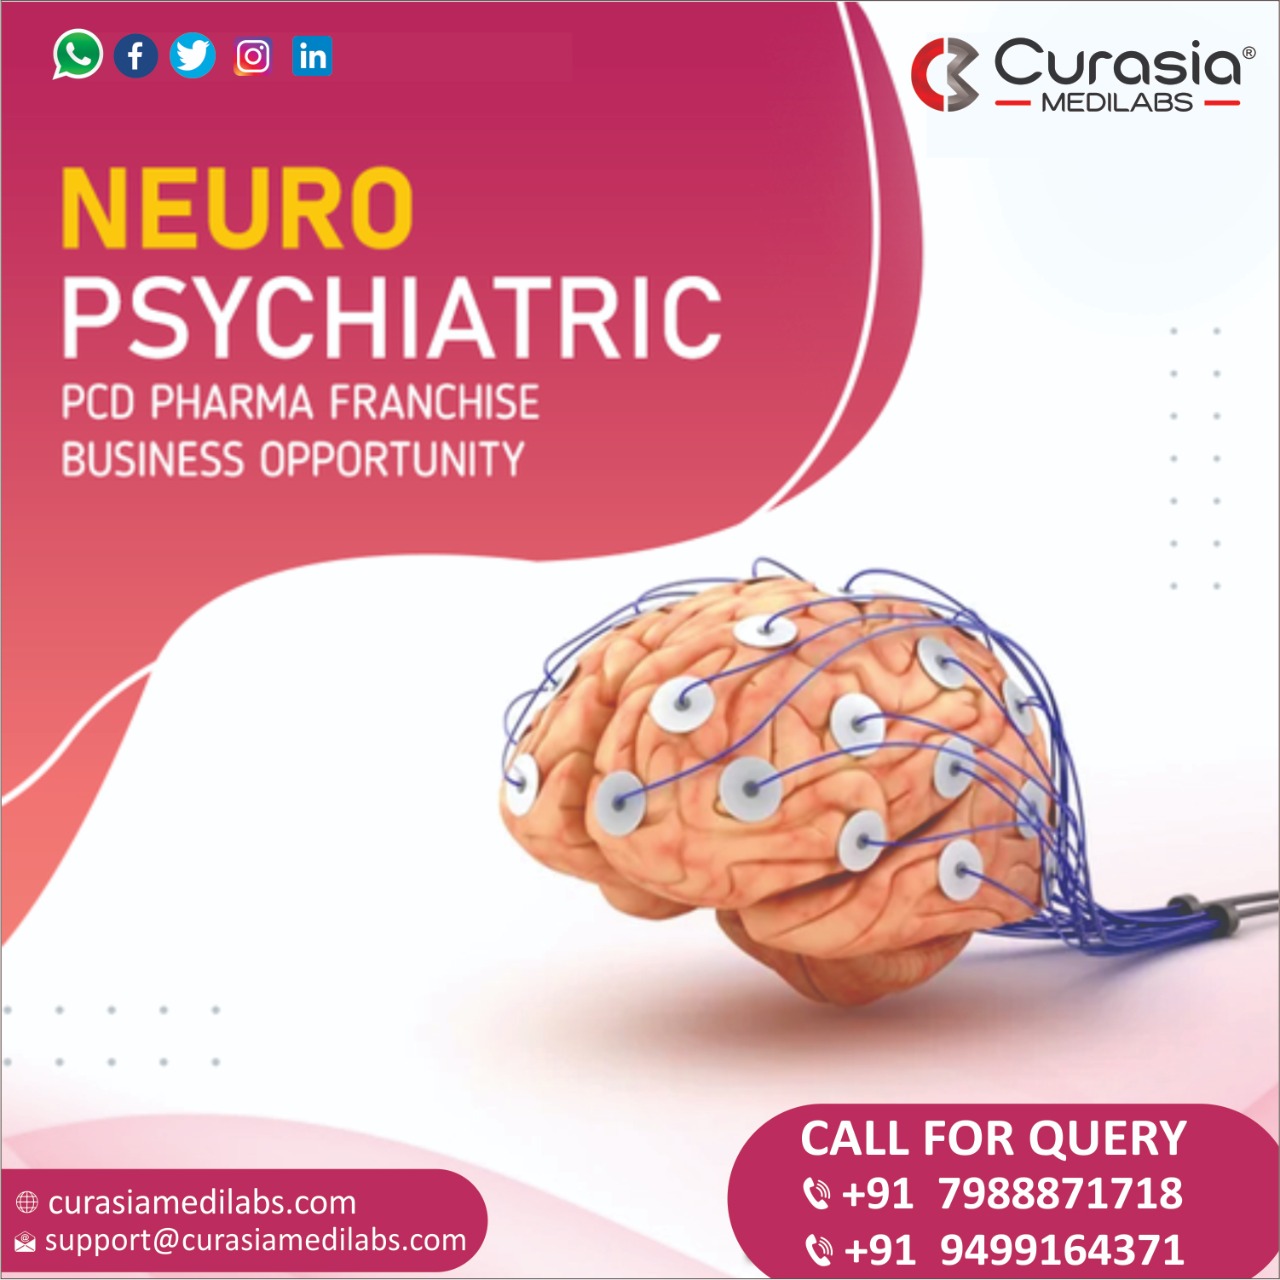 Neuro PCD Pharma Company